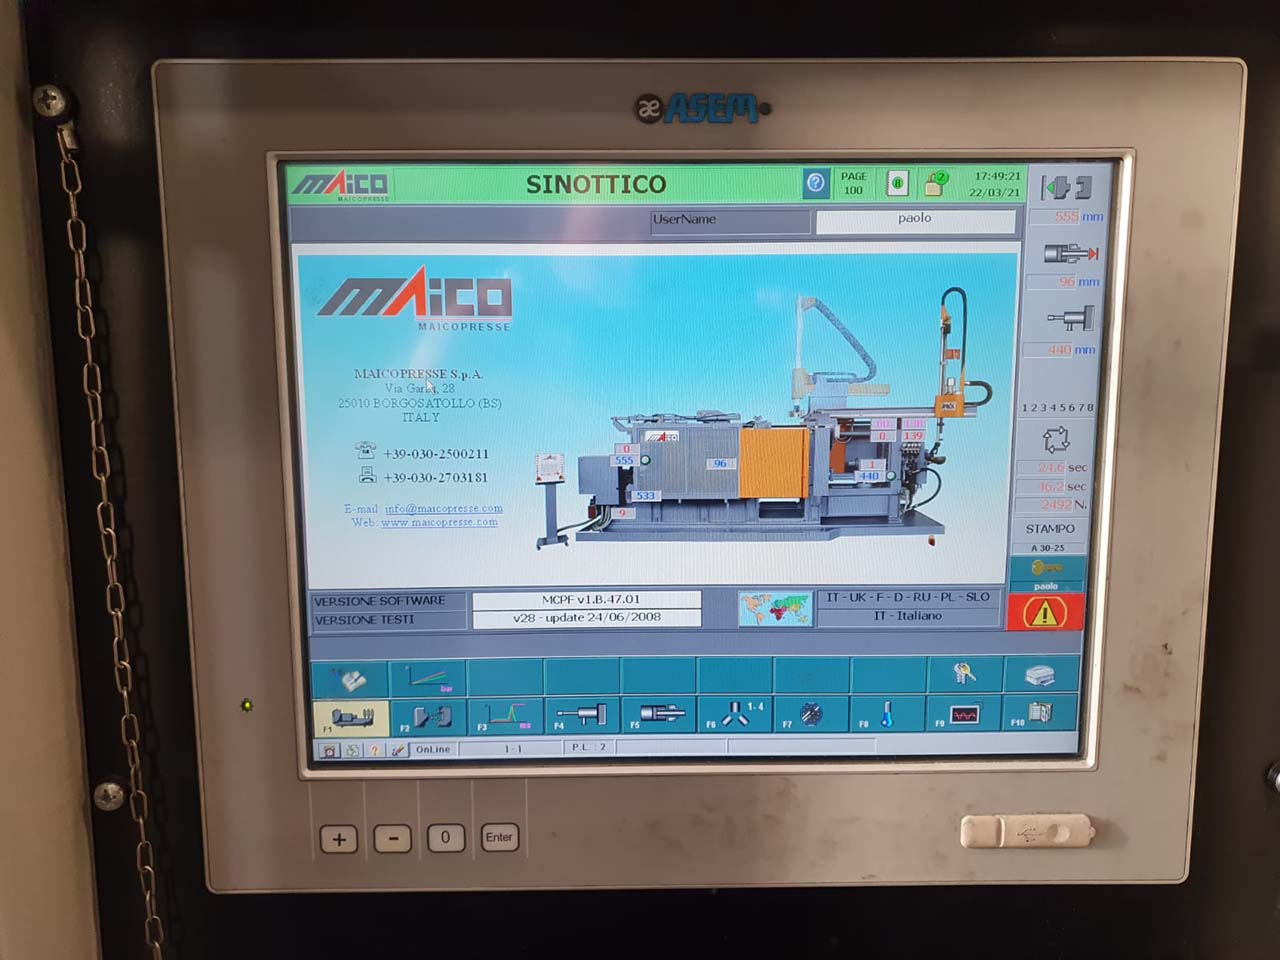 Maico GK 630 maszyna odlewnicza zimnokomorowa KK1614, używana